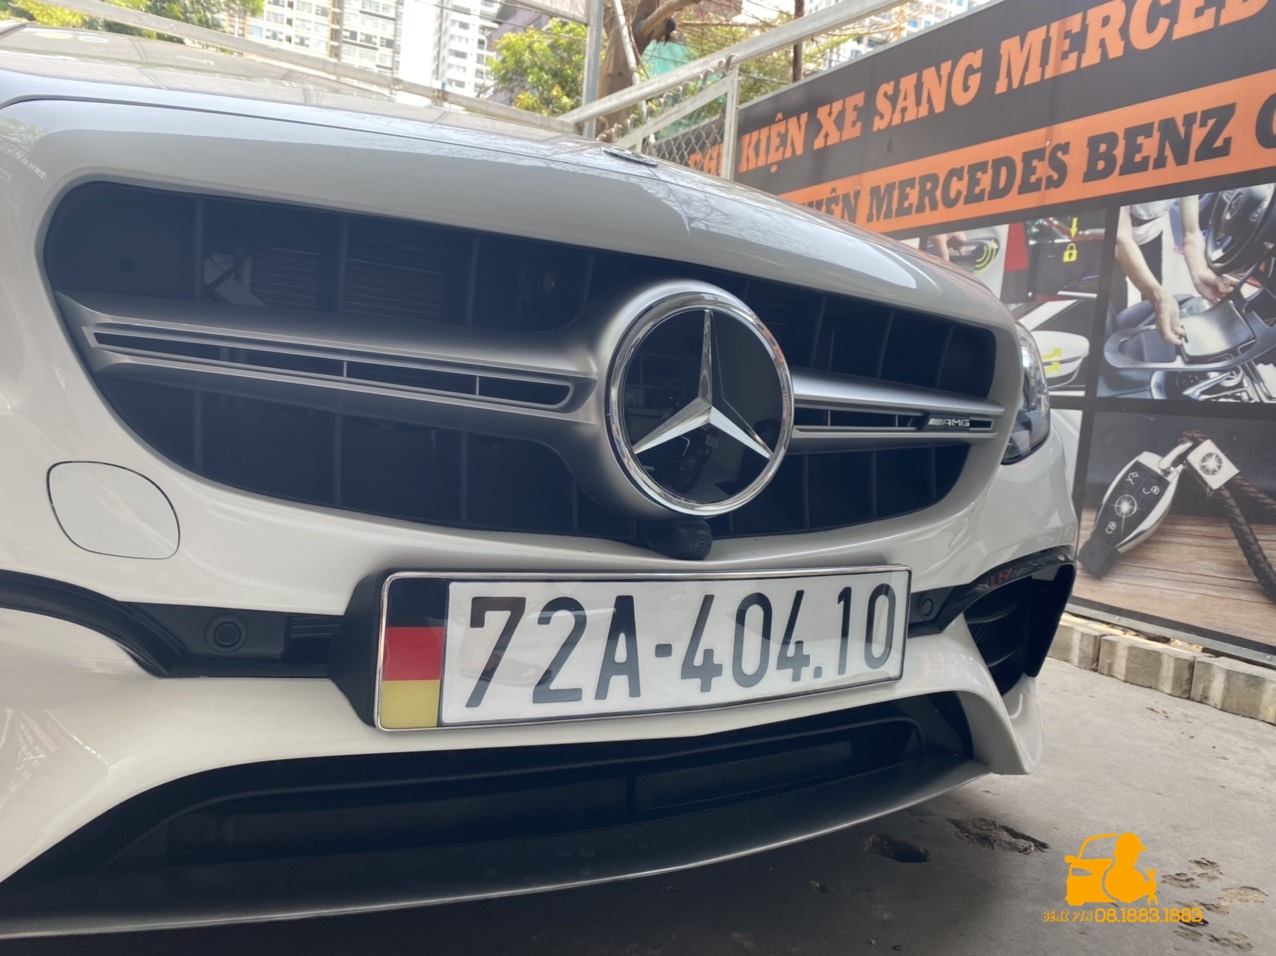 Phụ kiện xe sang Mercedes Benz nơi cung cấp và lắp đặt đèn logo uy tín